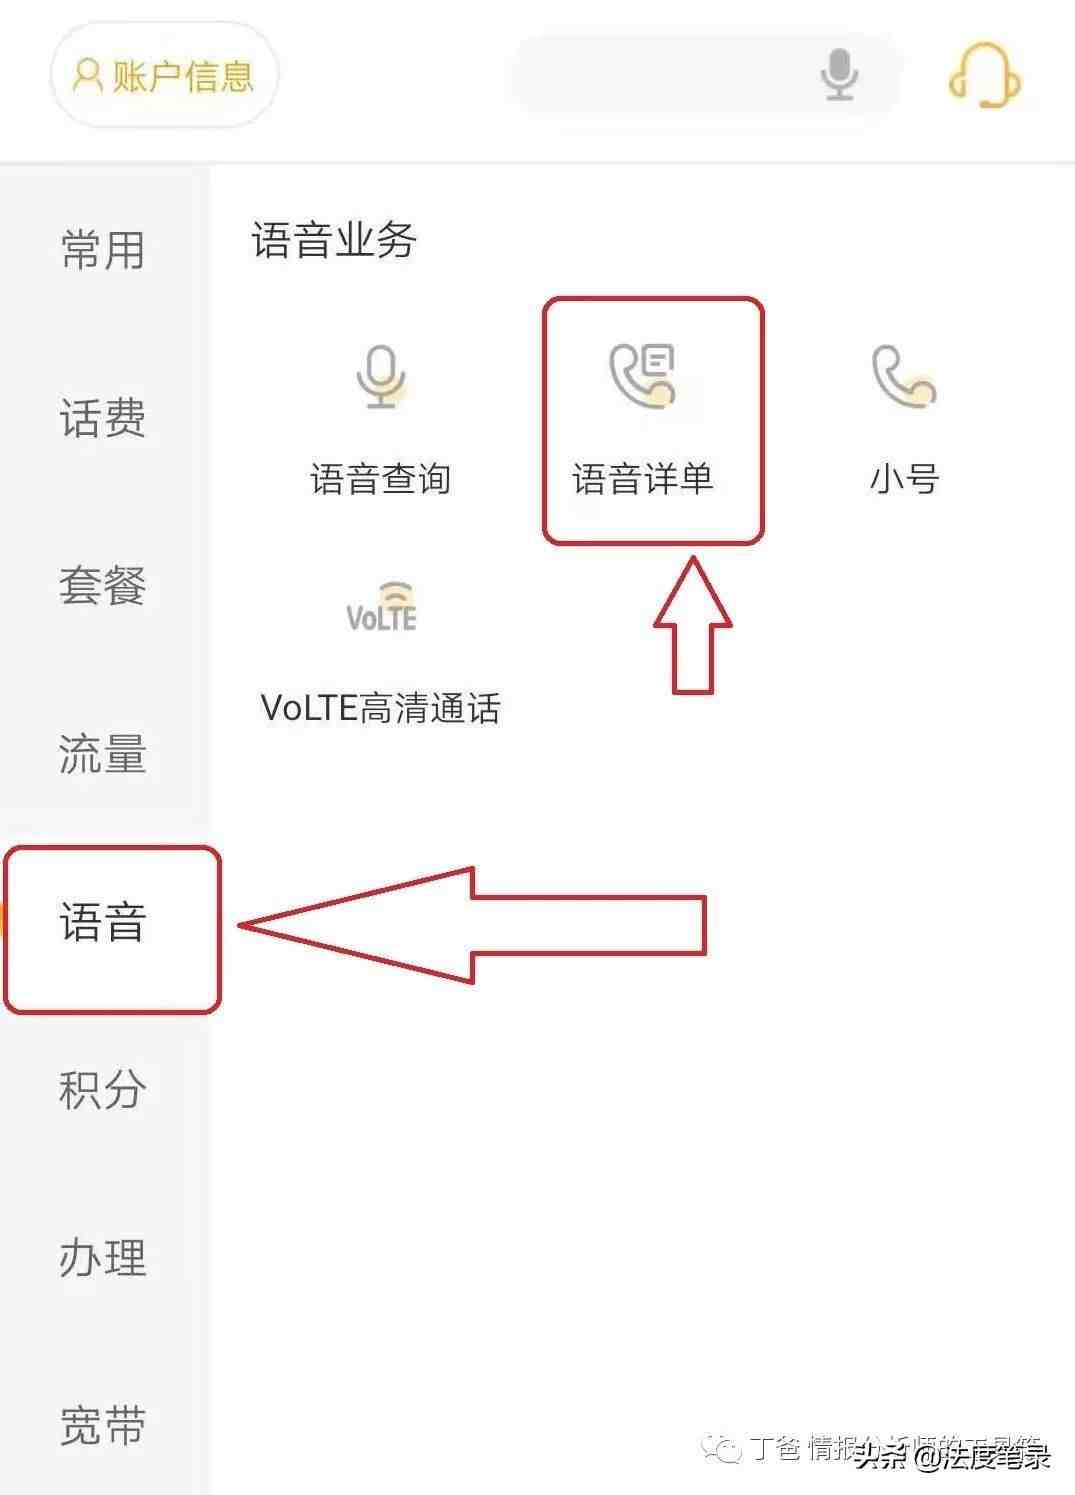 中国联通网上查通话记录查询|联通怎样查询通话详单